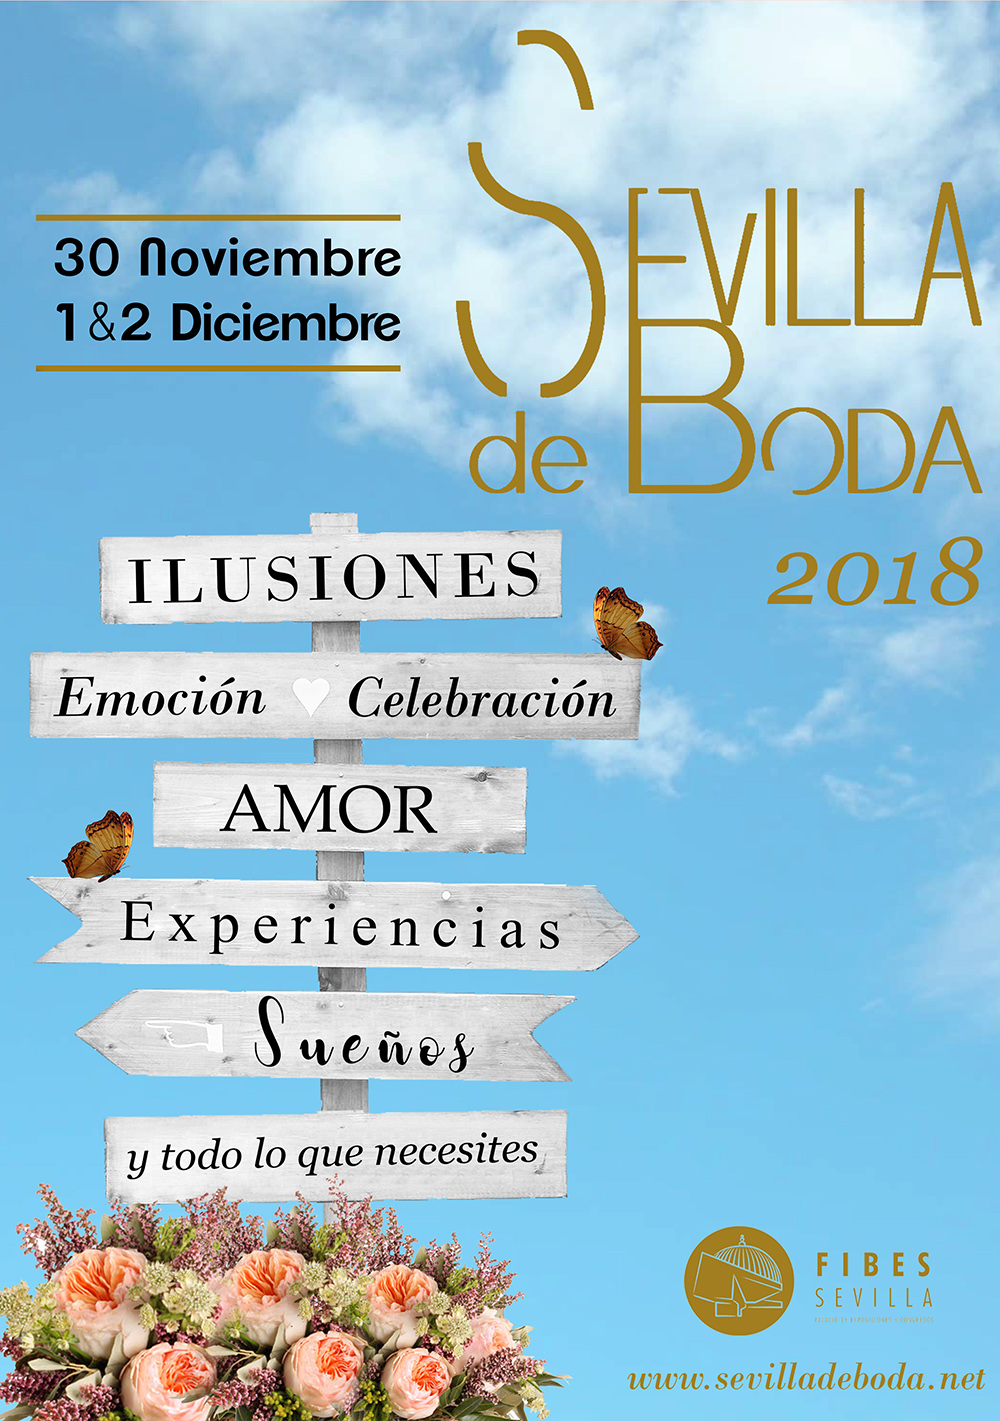 Sevilla de Bodas 2018 in Fibes Seville